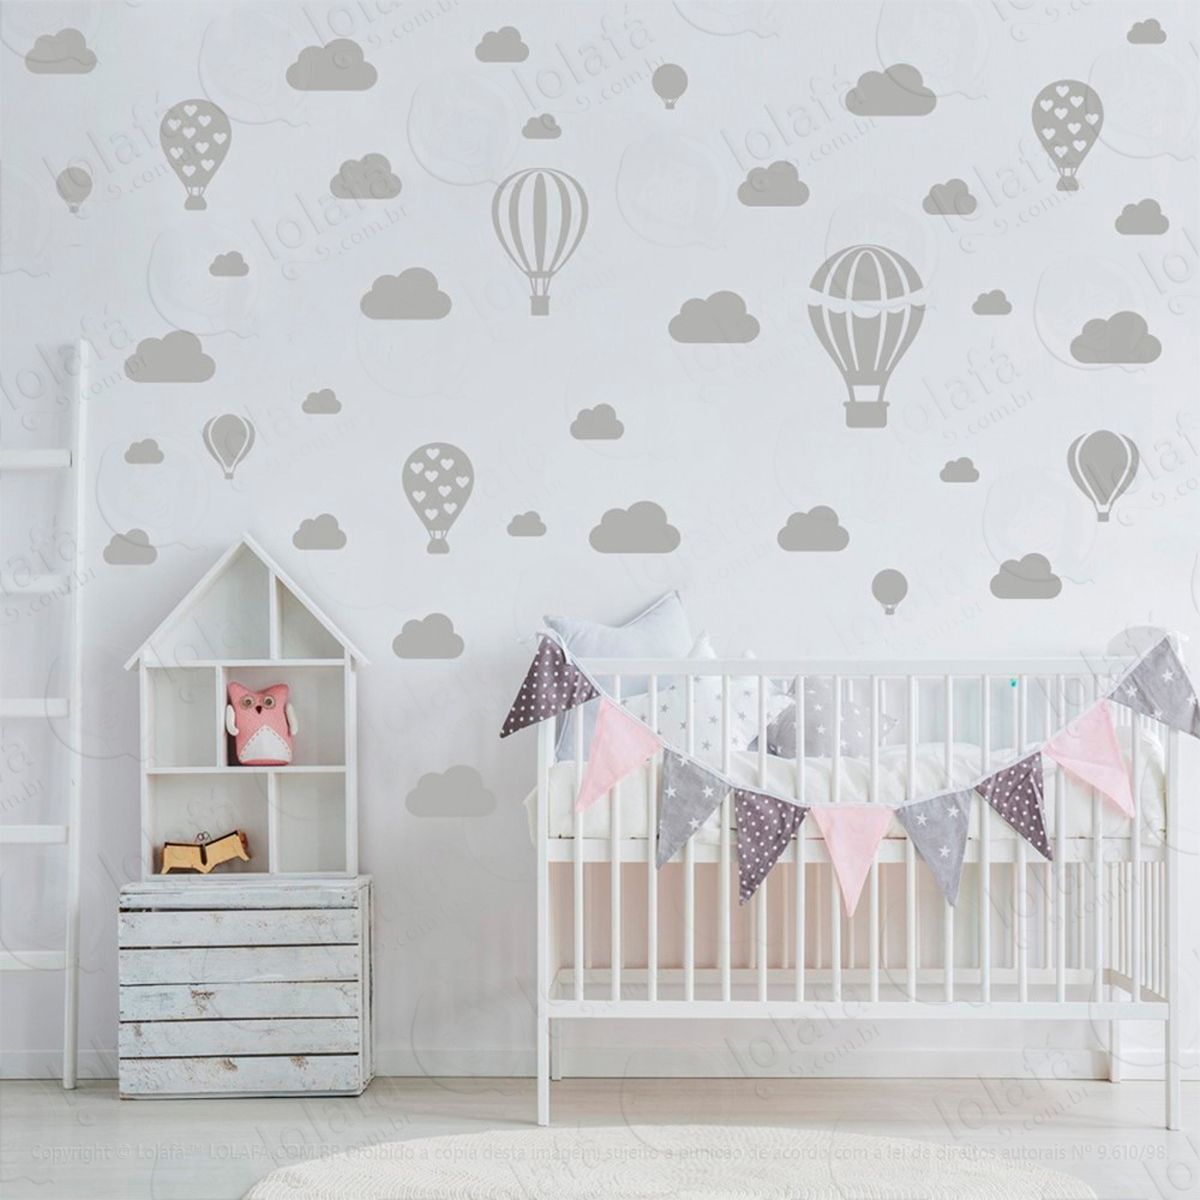 adesivos balões e nuvens 42 peças adesivos para quarto de bebê infantil - mod:945